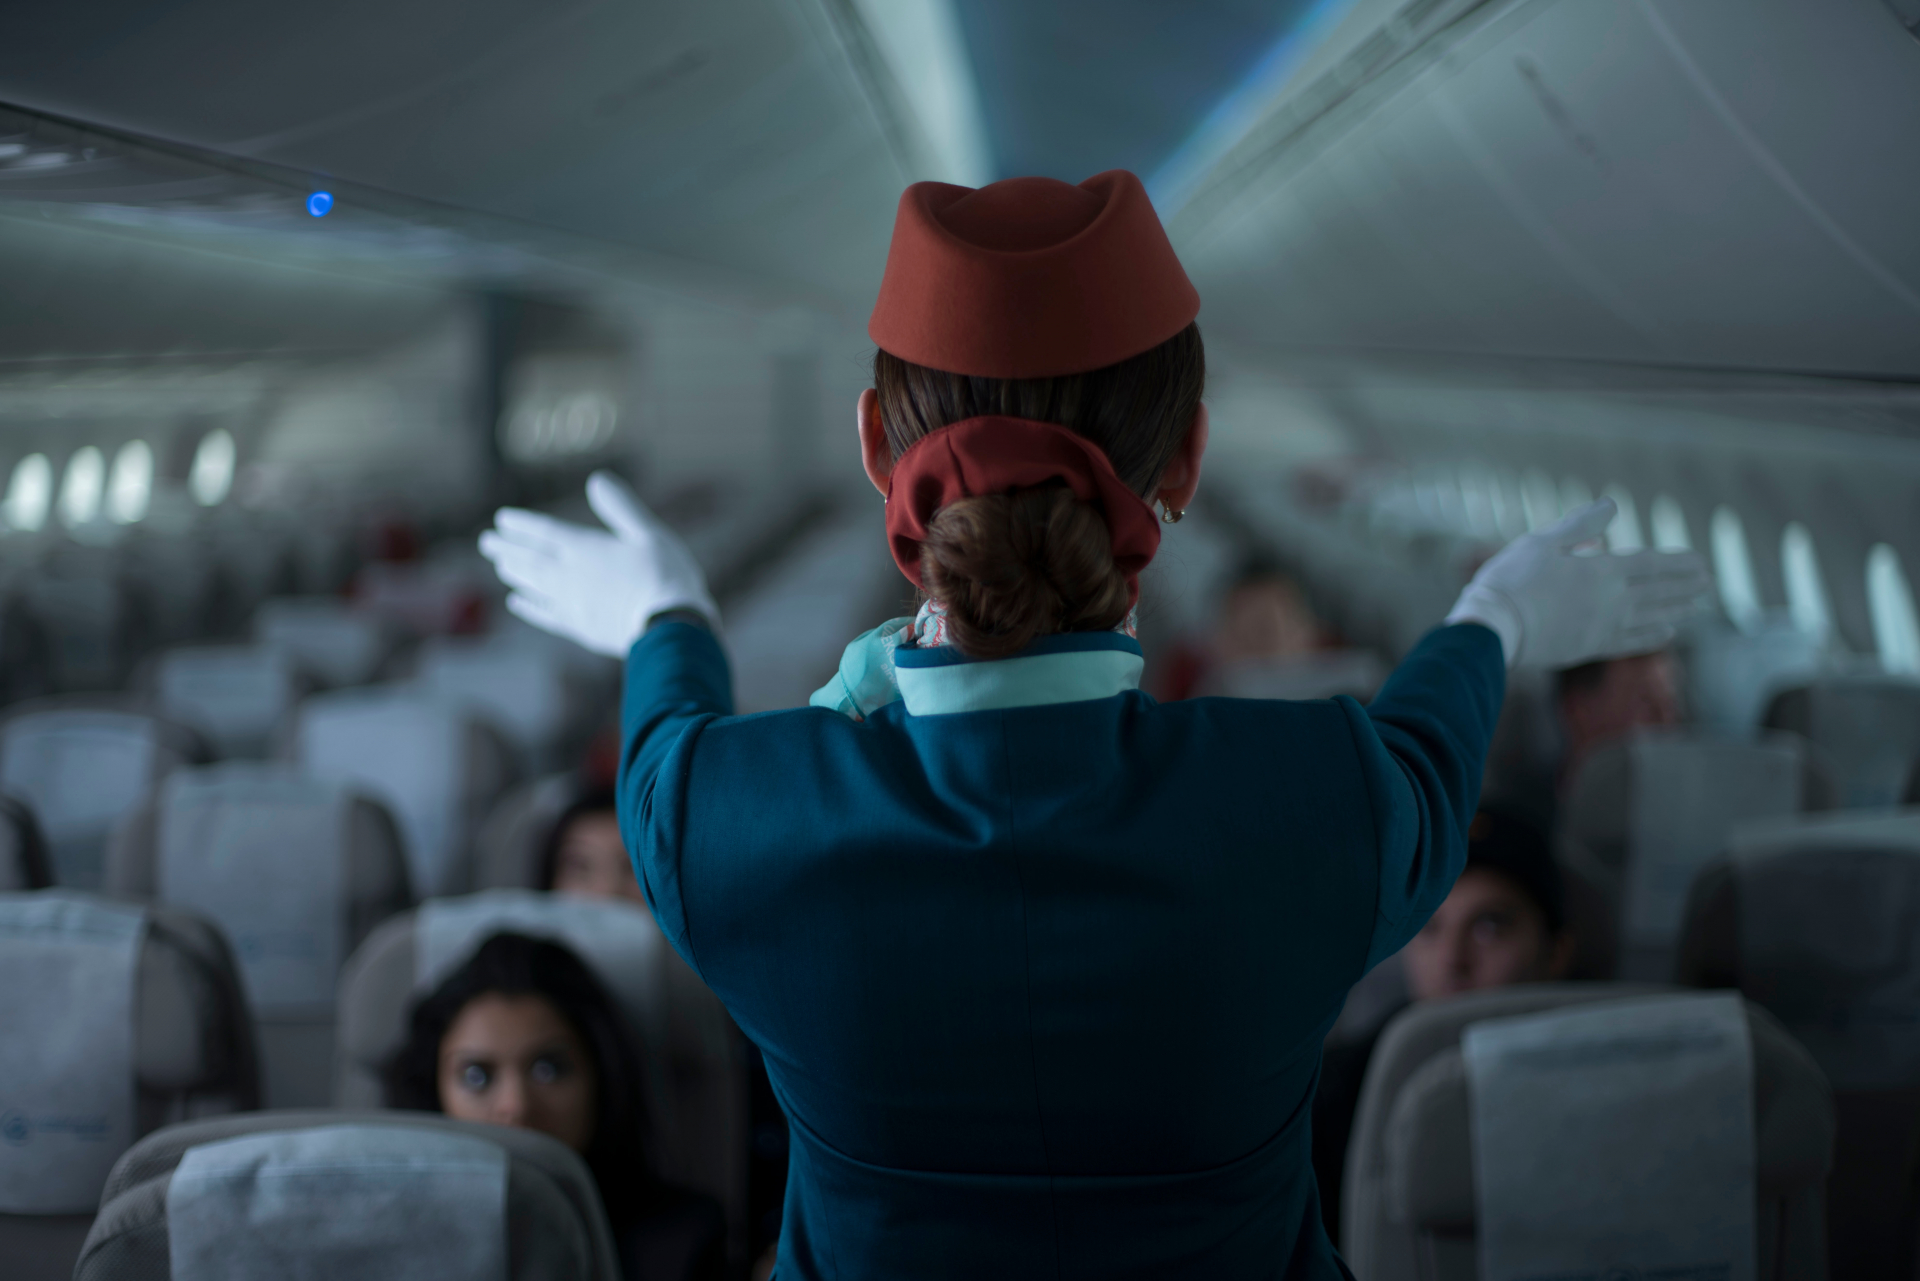 Естествена хубост: Руска стюардеса разтопи потребителите в мрежата